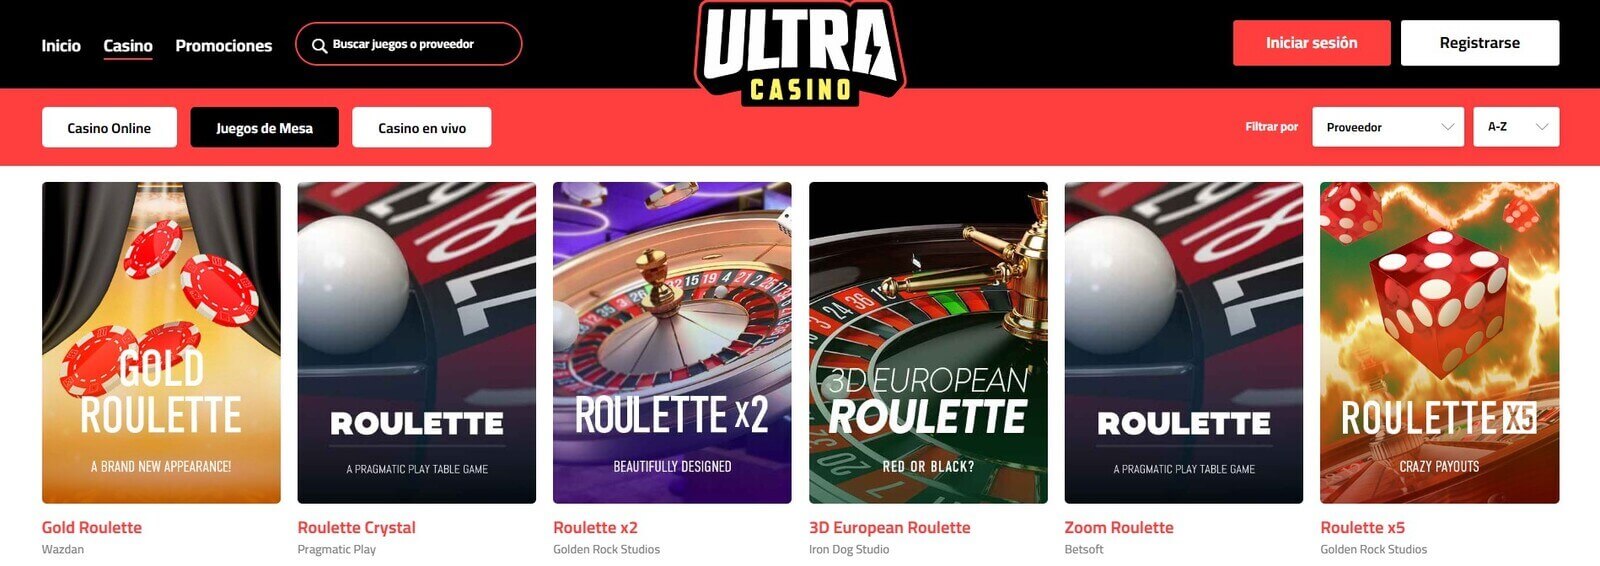 Jugar a los juegos de ruleta en Ultra Casino Casino online